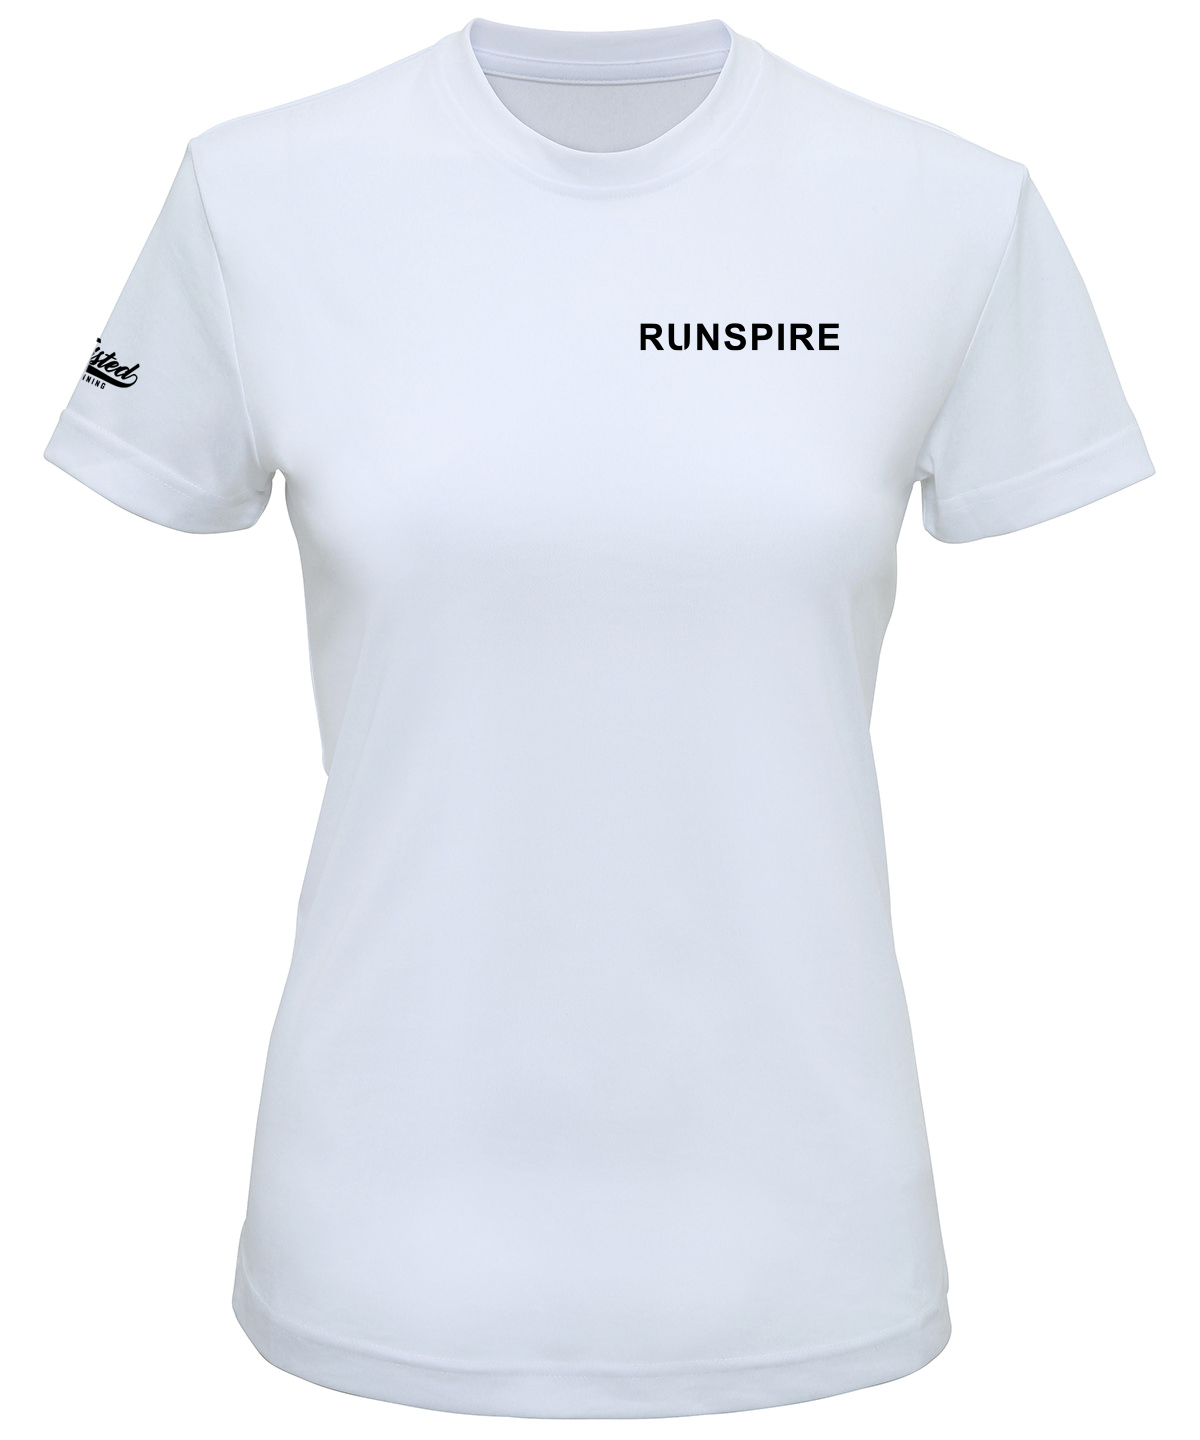 Runspire Technical T-Shirt (Womens Fit)